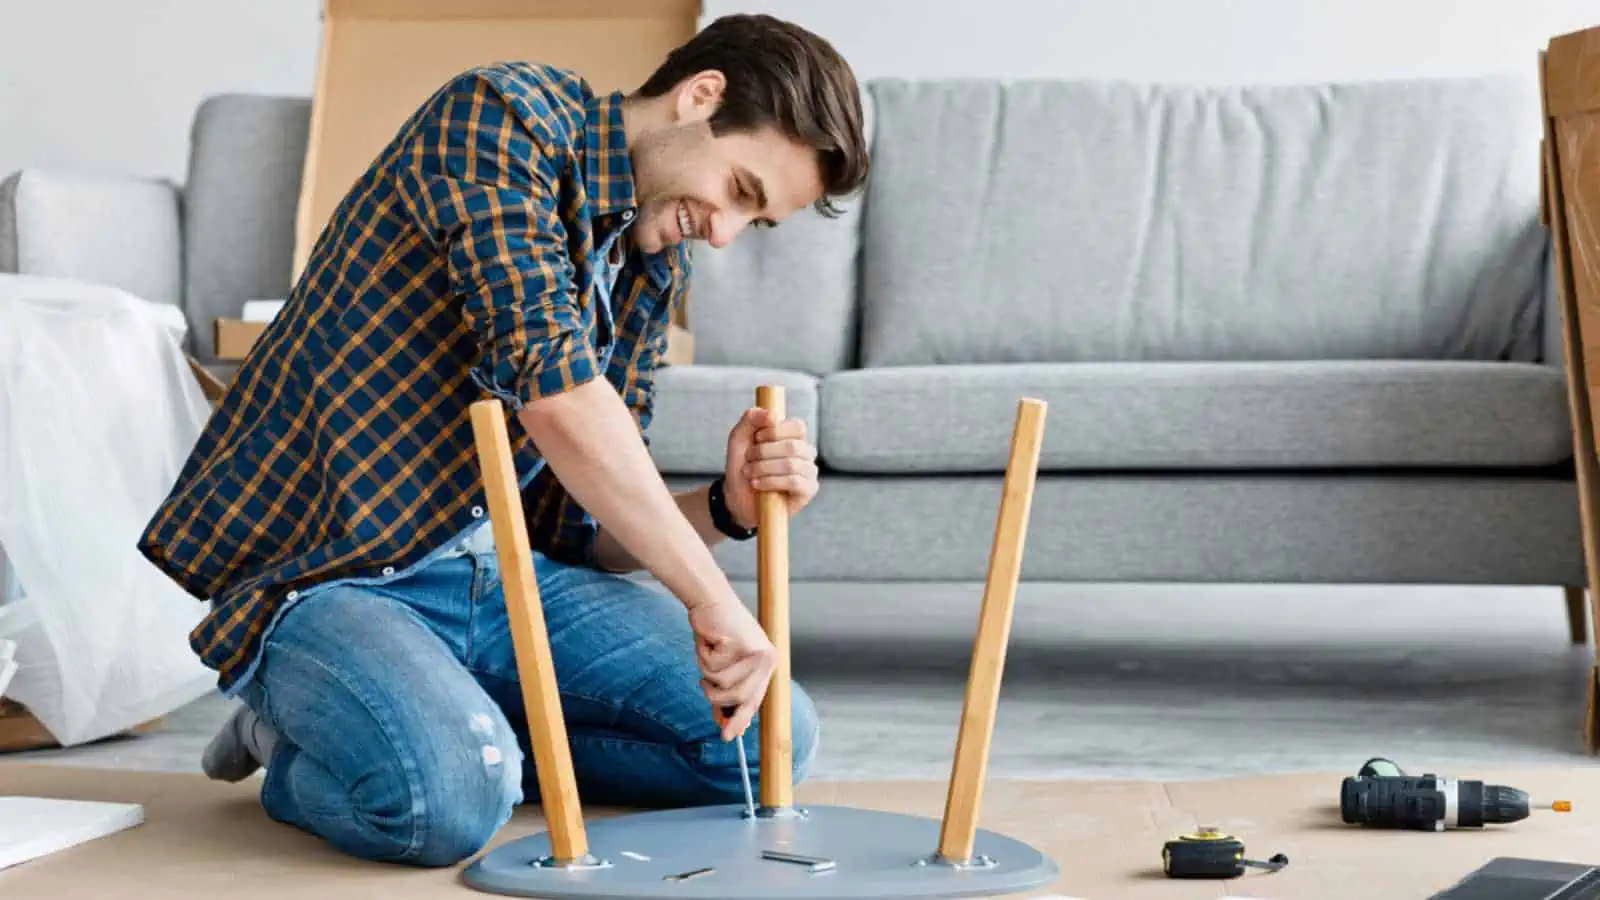 Man fixing furniture